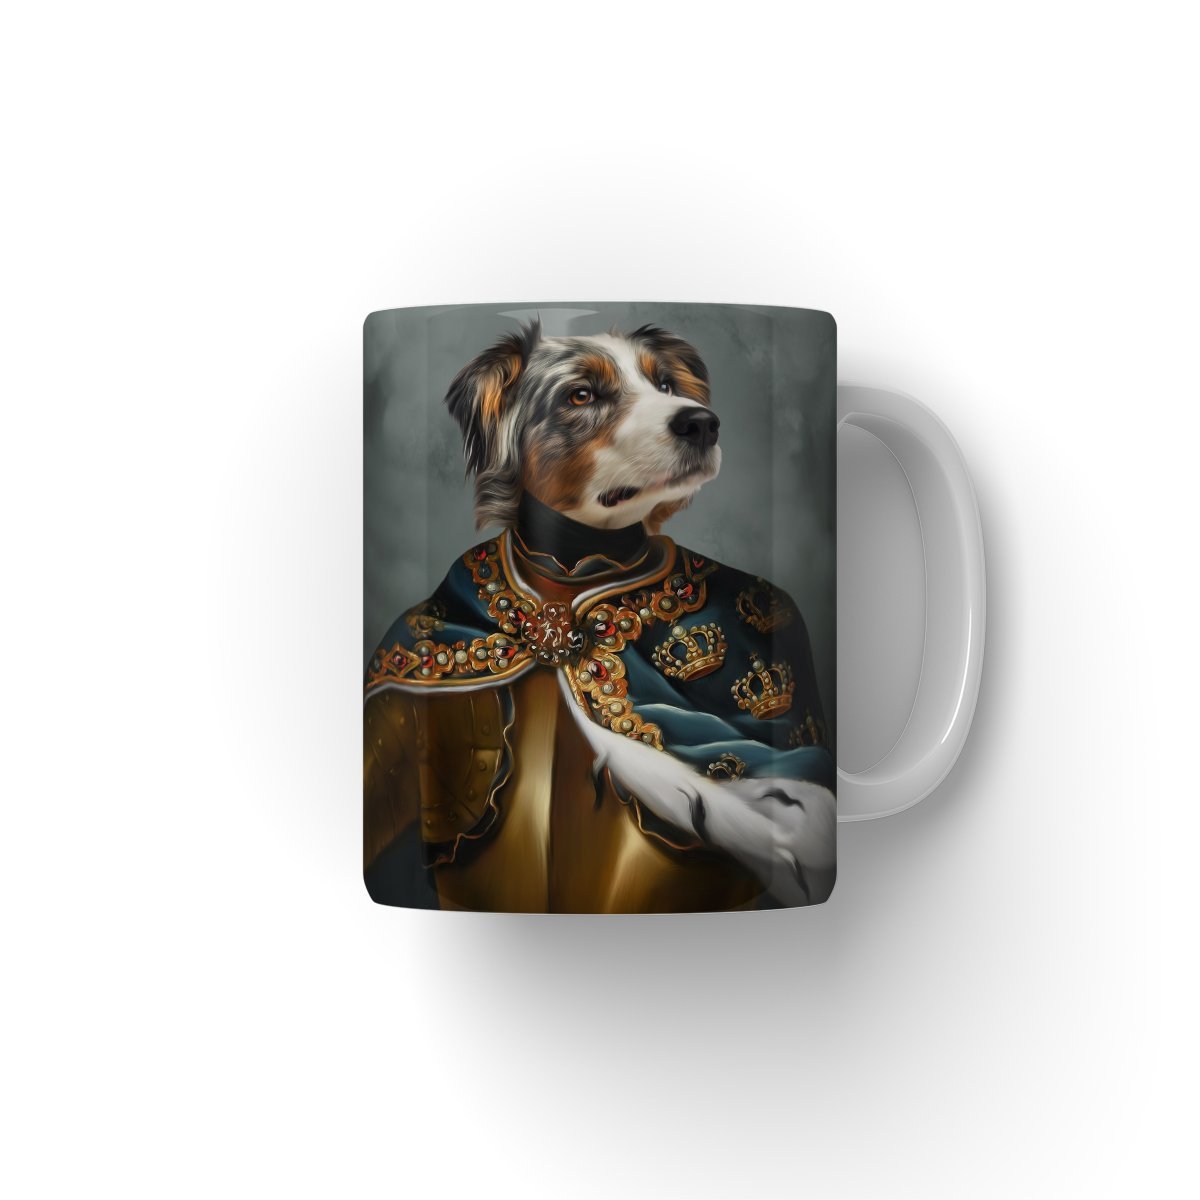 The Royal Knight: Custom Pet Mug - Paw & Glory - #pet portraits# - #dog portraits# - #pet portraits uk#paw and glory, pet portraits Mug,custom pet mugs, mug with dog picture, dog photo mug, mug for dog, personalized dog and owner mug